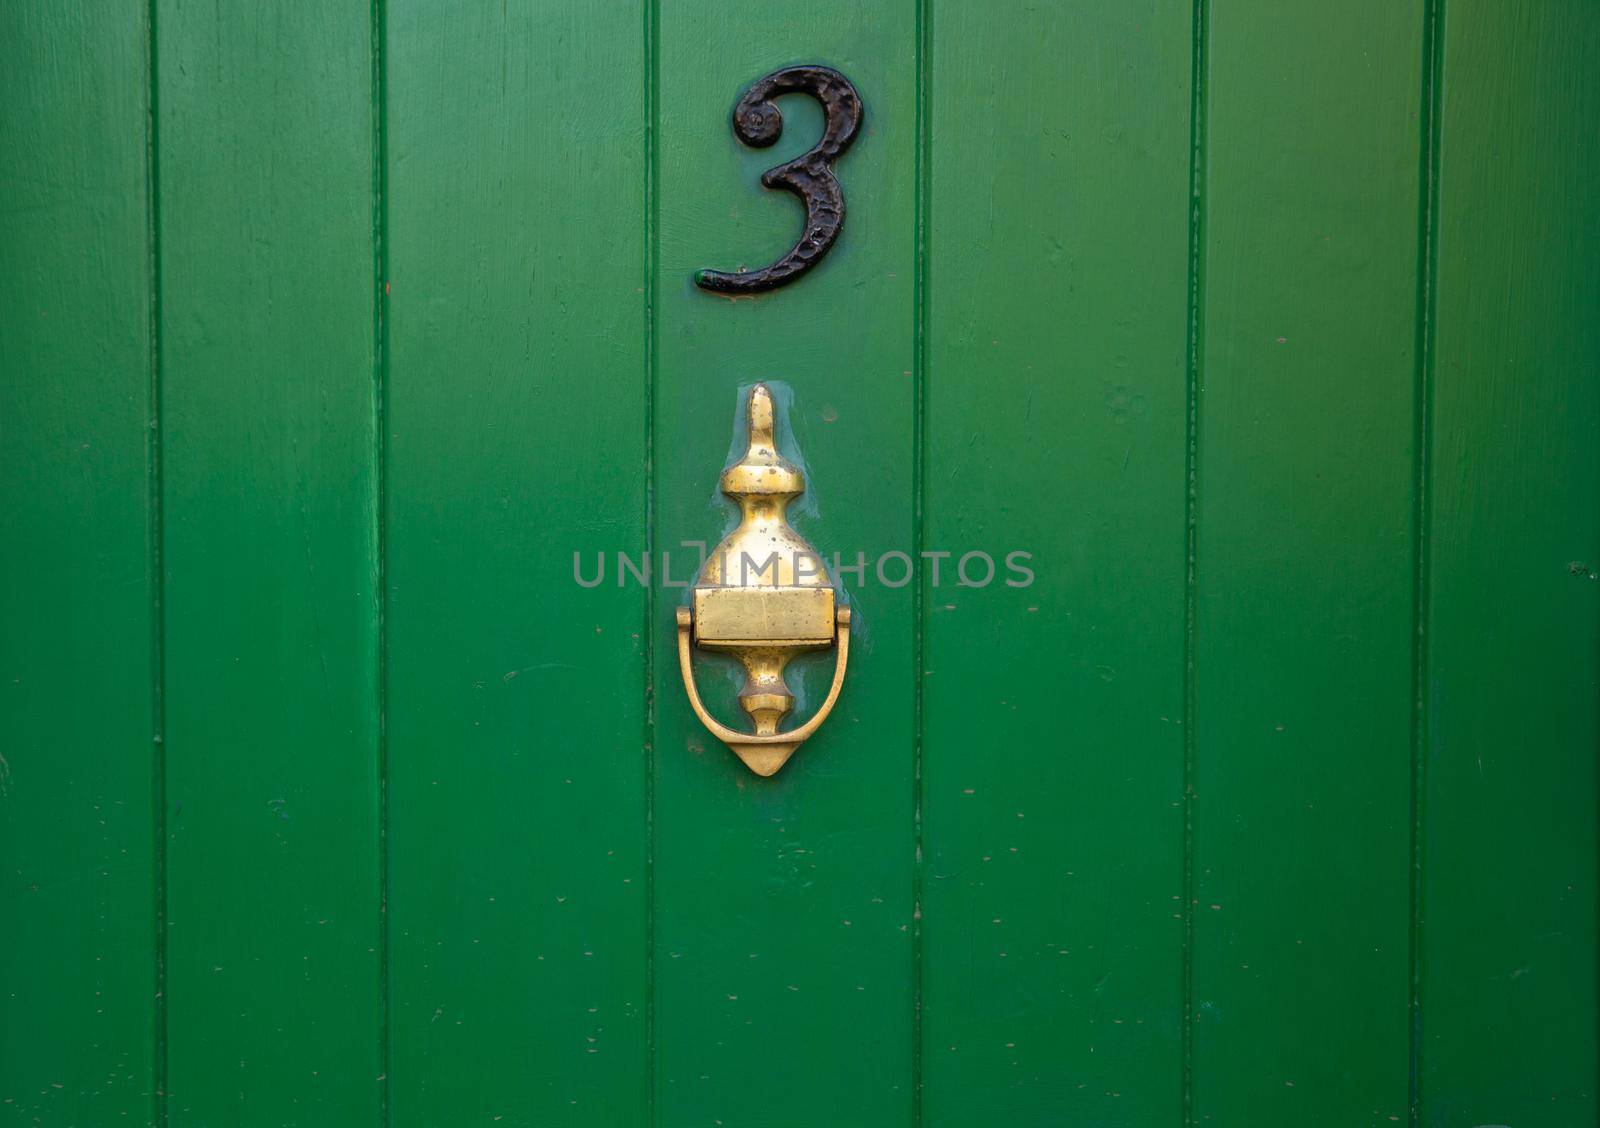 House number 3, green wooden front door with gold brass metal door knocker. Old antique painted door with knocker. UK, Suffolk